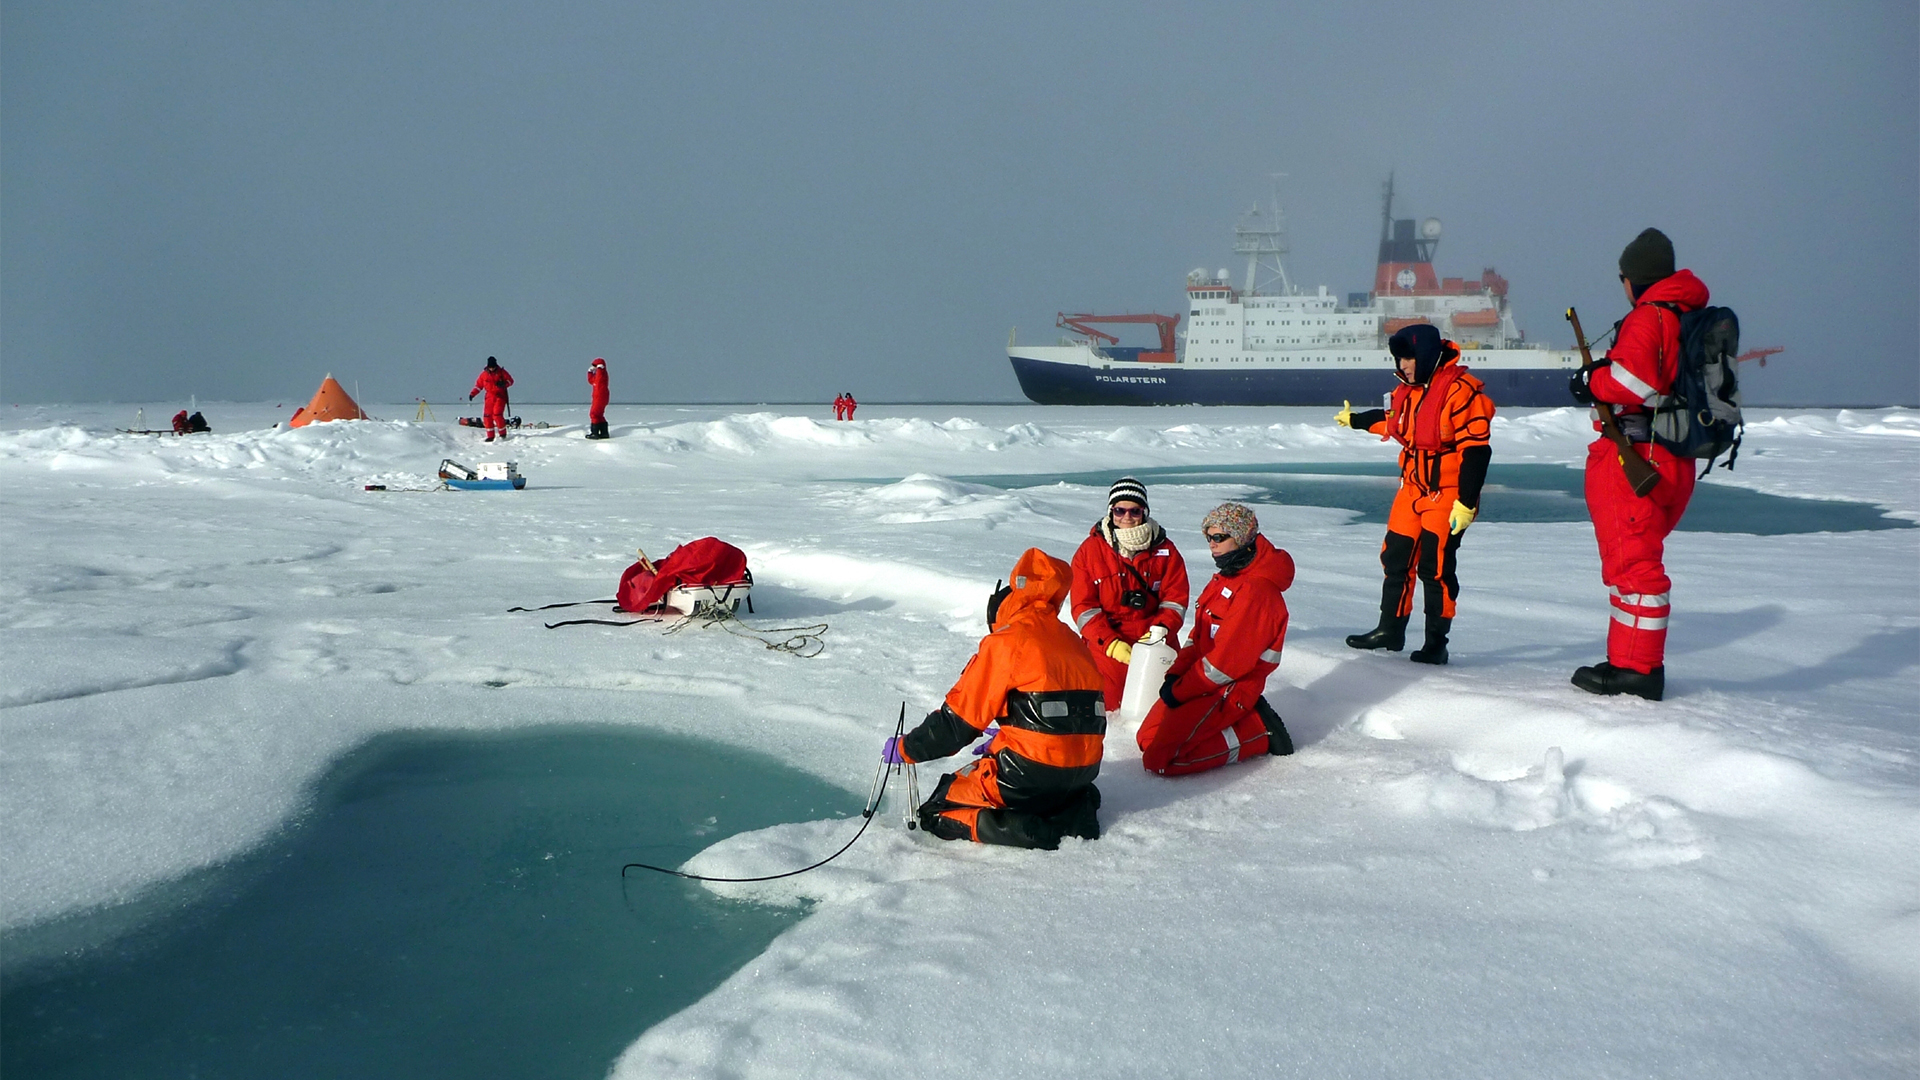 Arktis: Wissenschaftler vom Alfred-Wegener-Institut beproben einen Schmelztümpel auf arktischem Meereis | picture alliance / Mar Fernandez